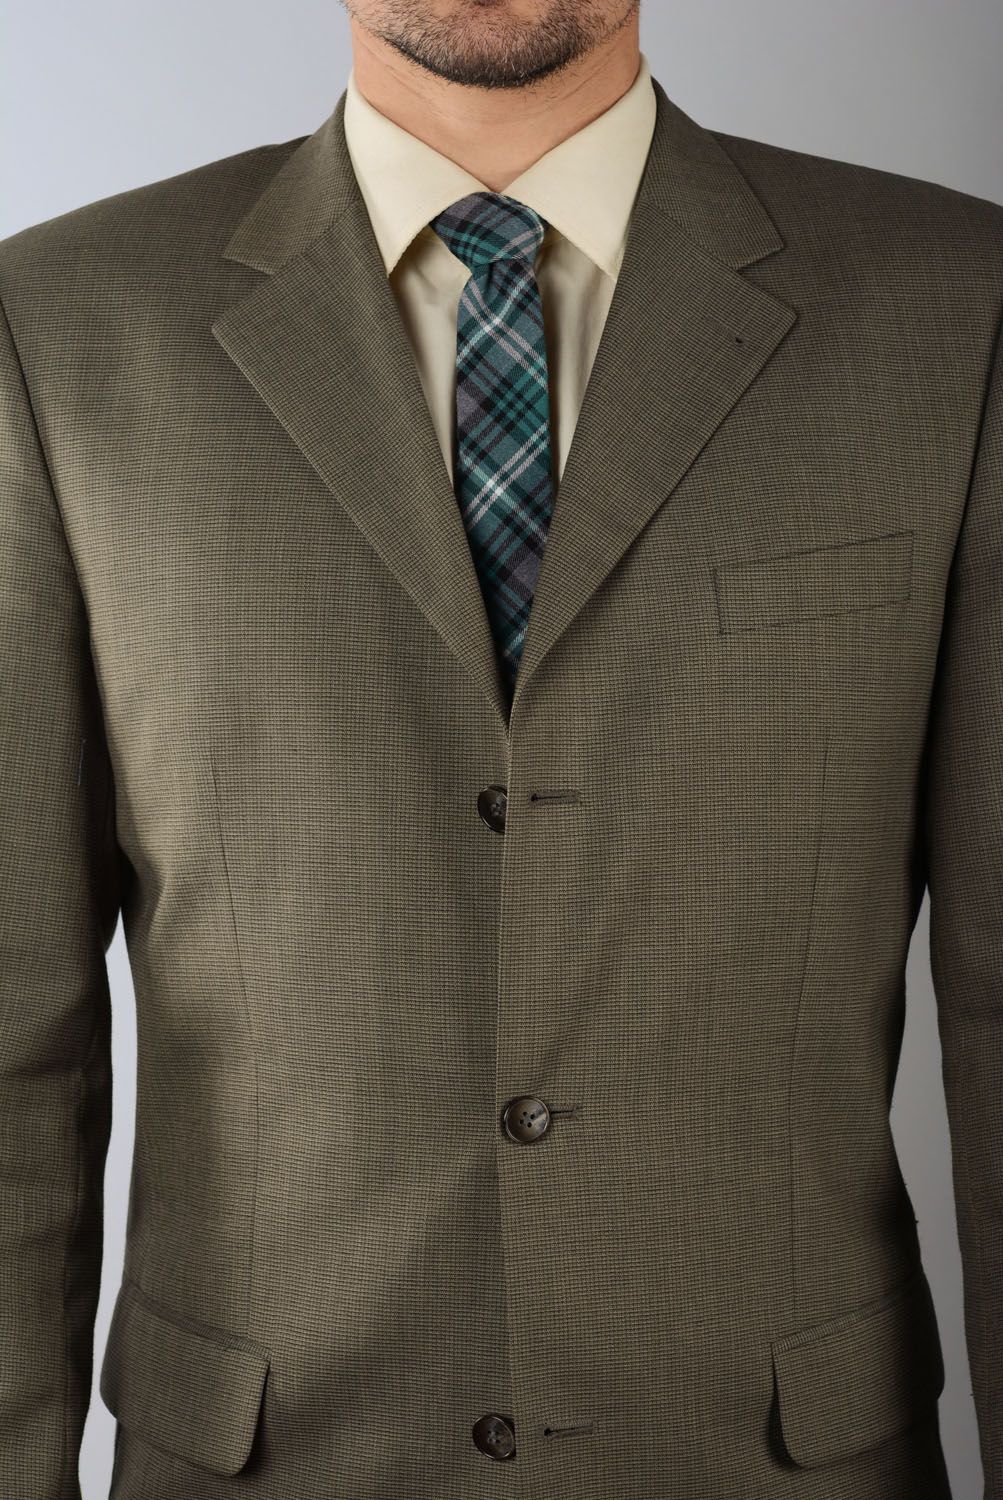 Cravate en tweed à carreaux faite main photo 4